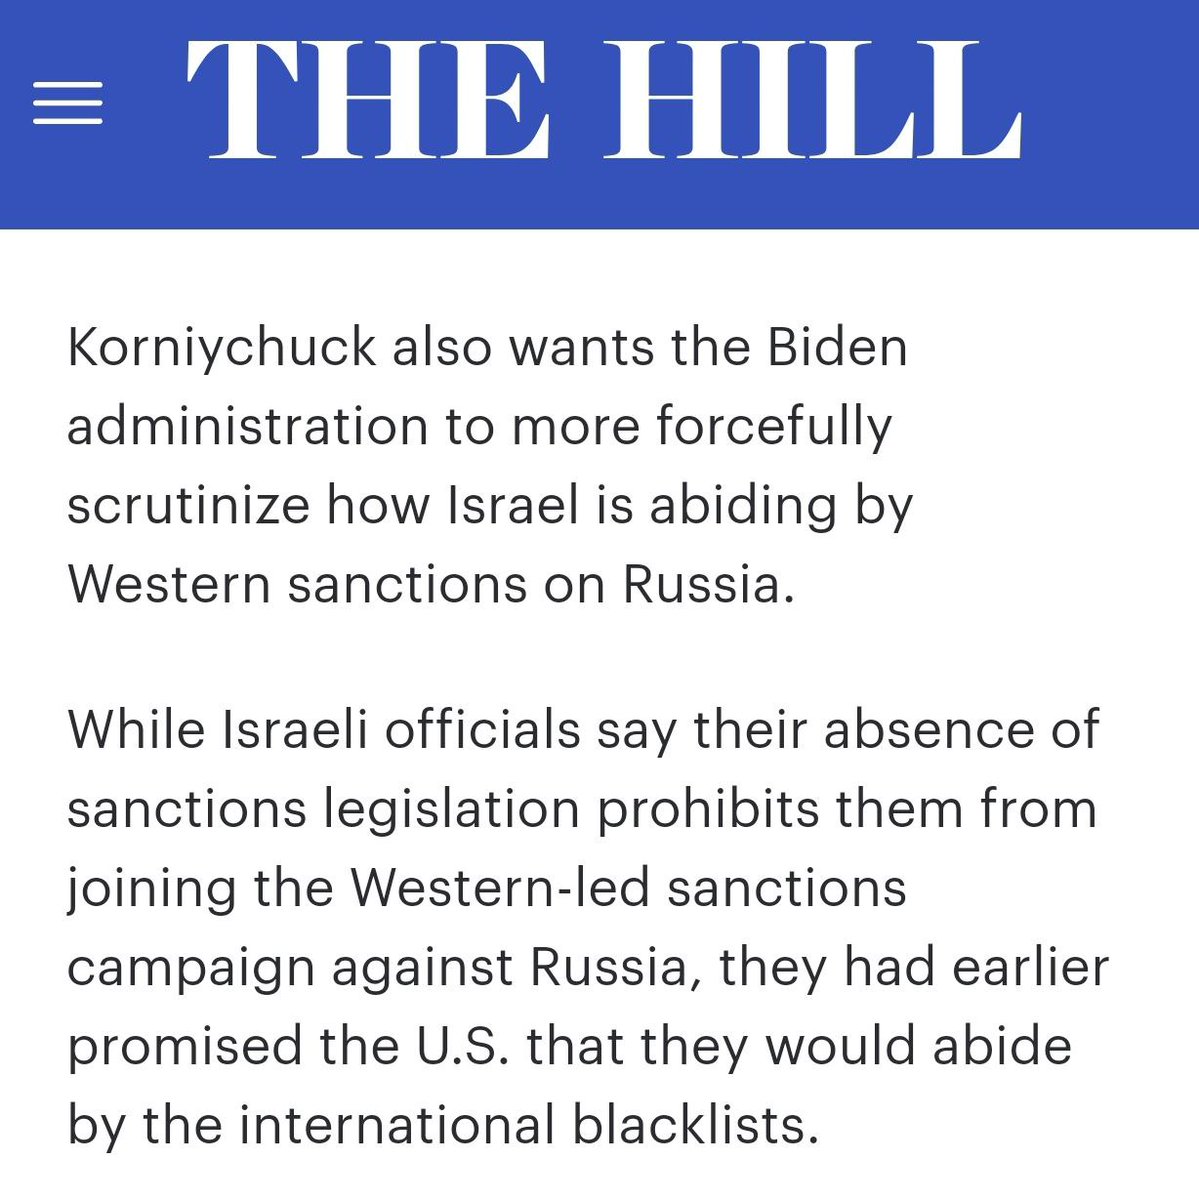 Киев требует от администрации Байдена проверить Израиль на предмет соблюдения западных санкций против России, пишет The Hill. И тут Зелю понесло.))